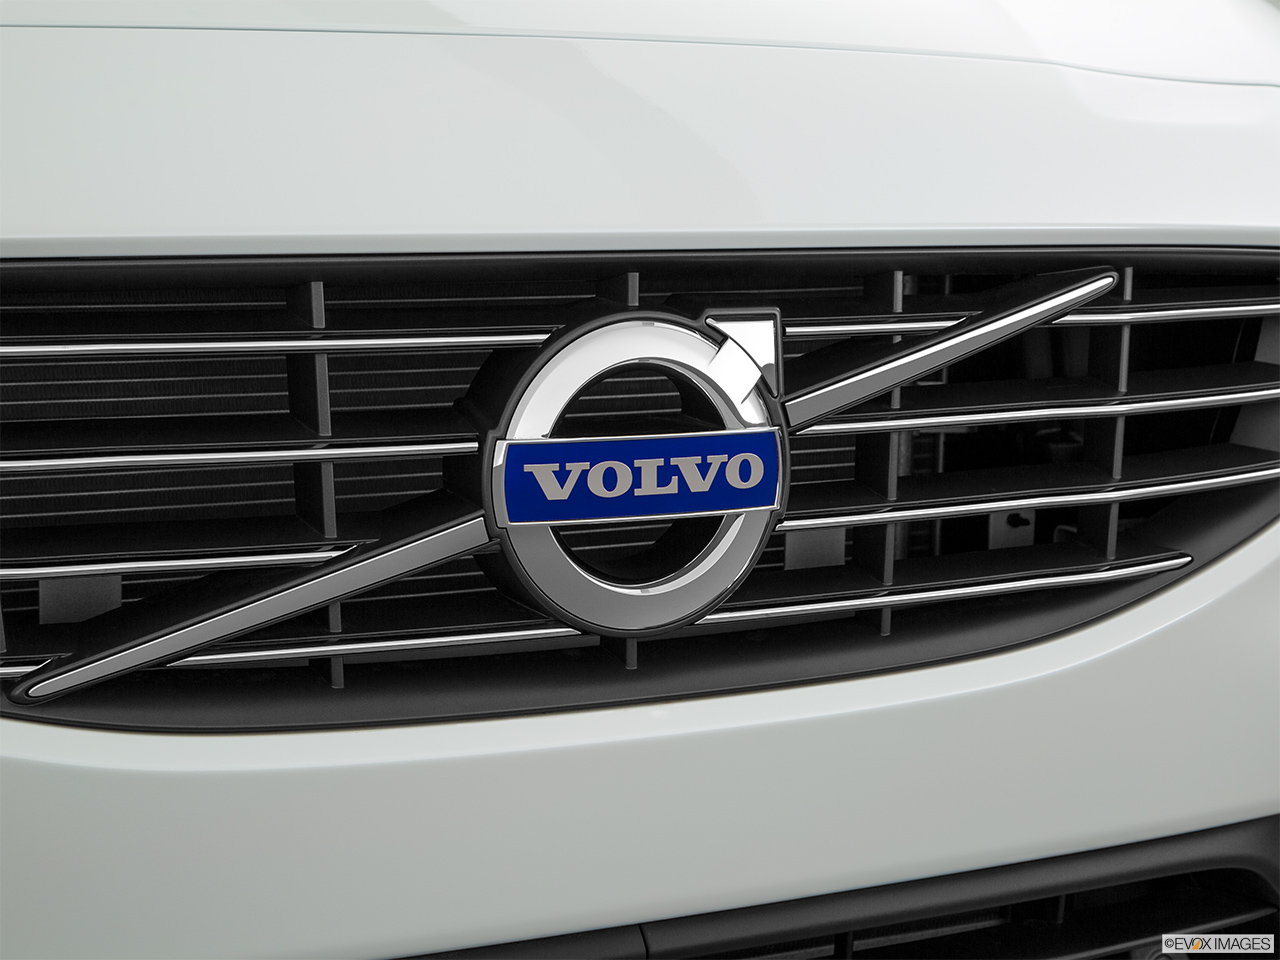 2017 Volvo V60 T5 Premier Rear manufacture badge/emblem 